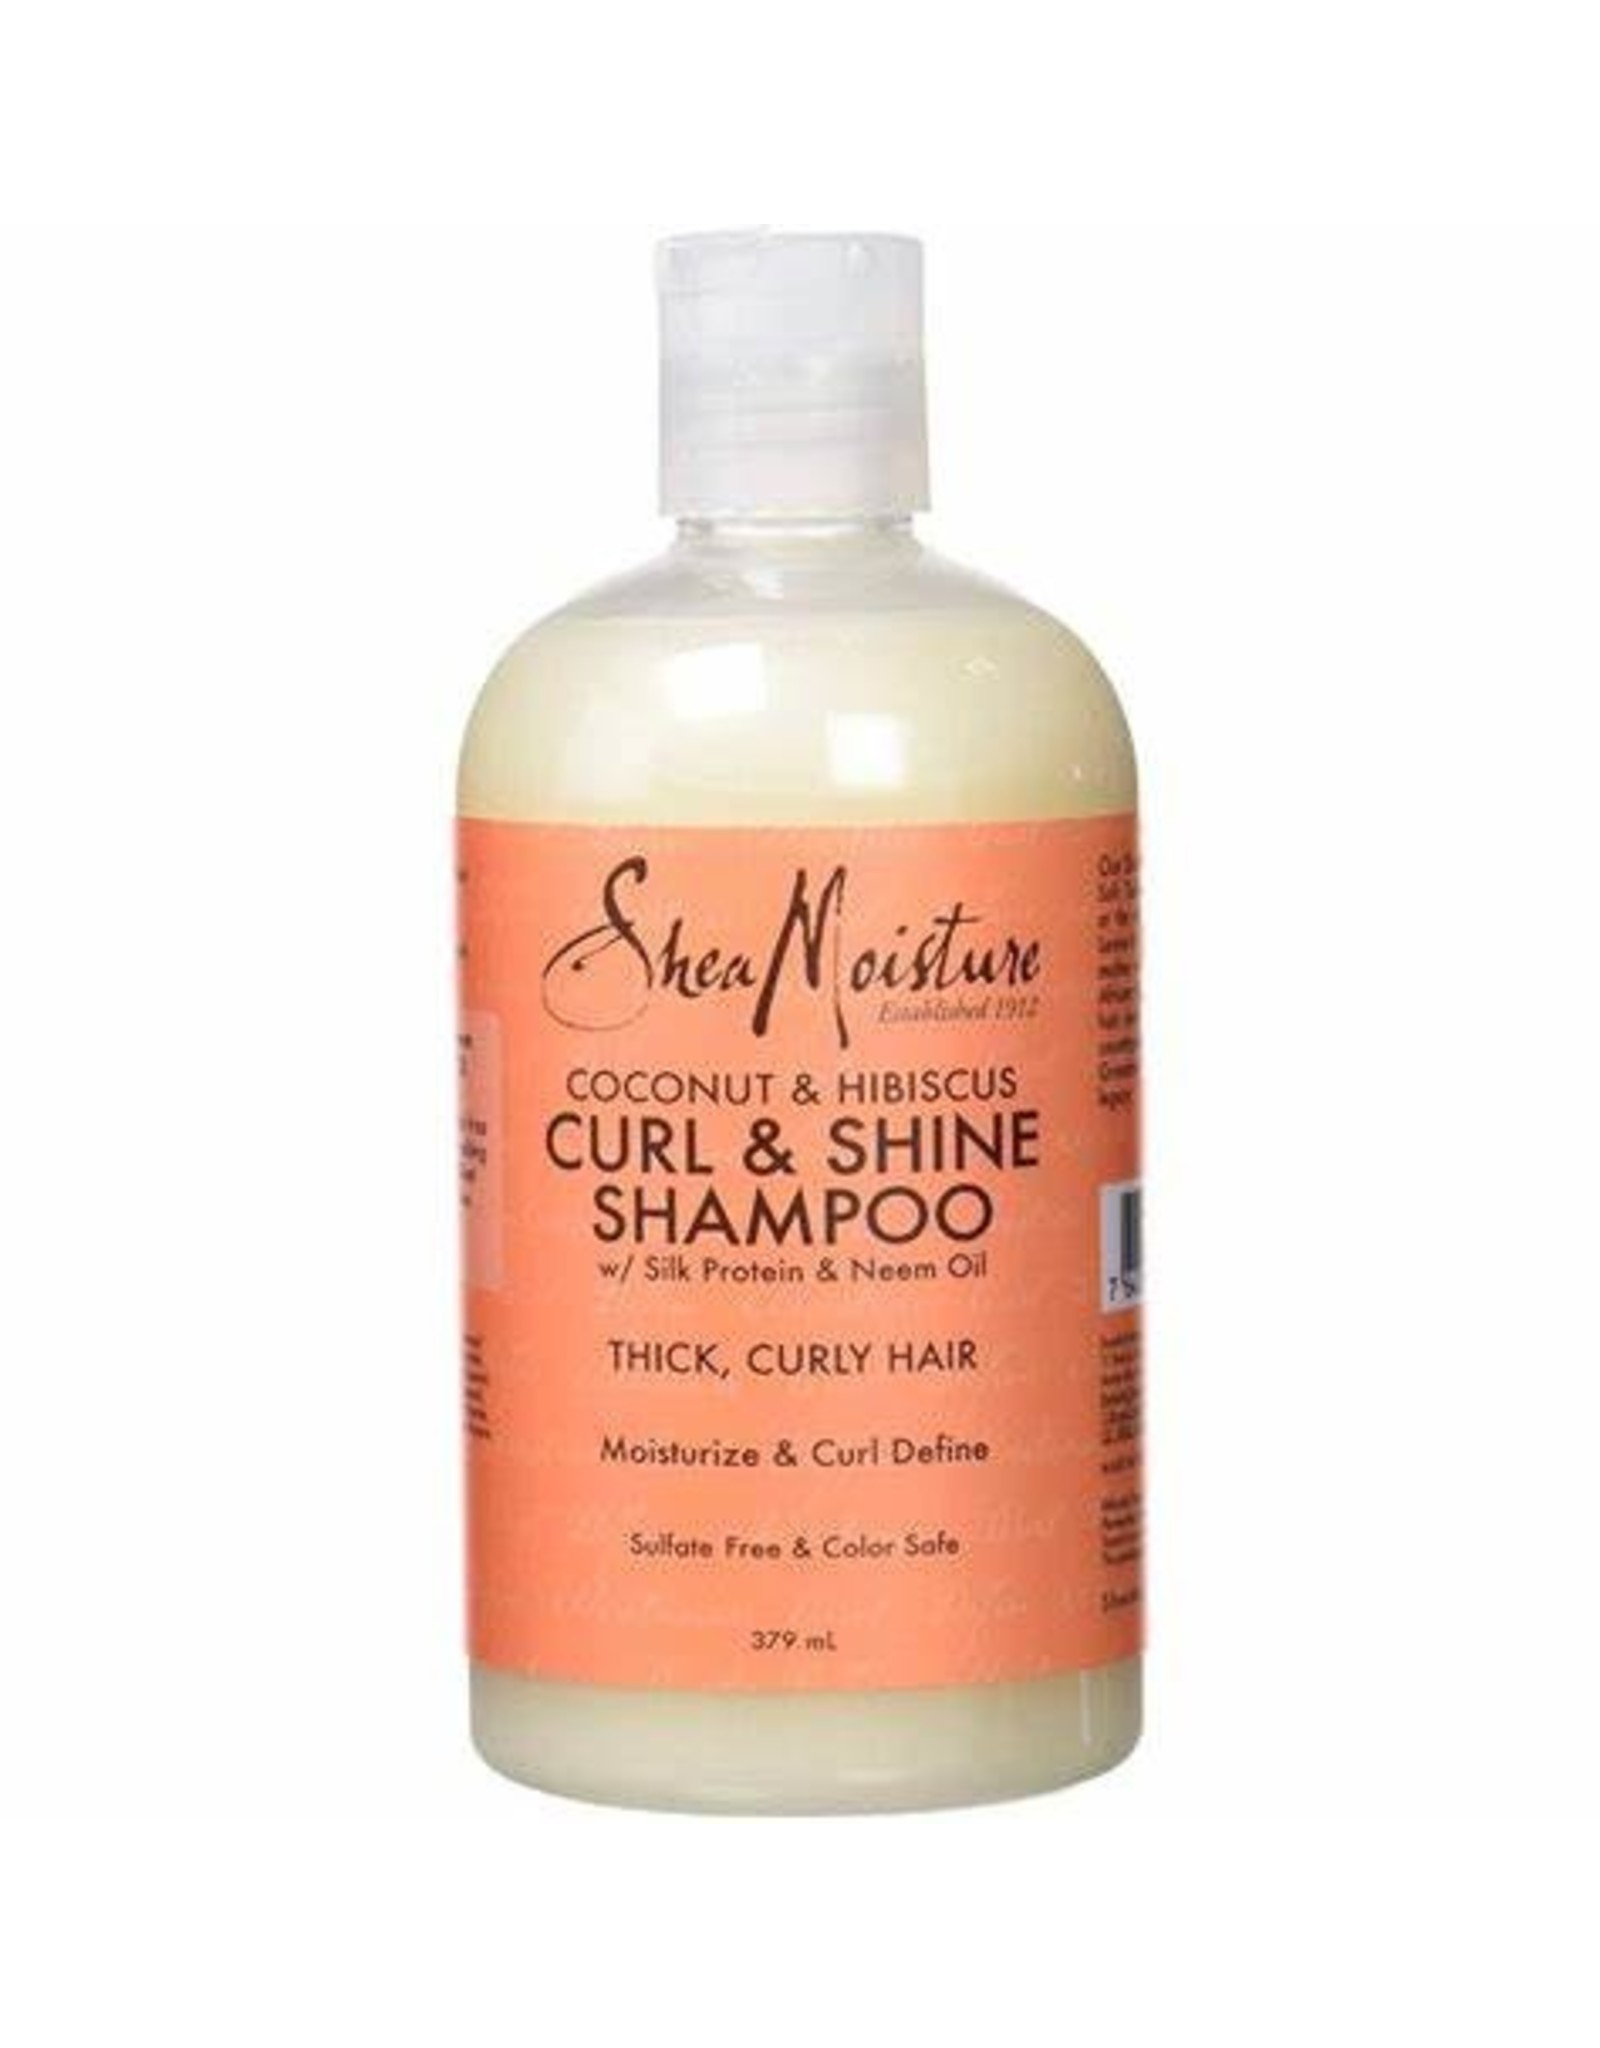 Shea Moisture Curl & Shine Shampoo